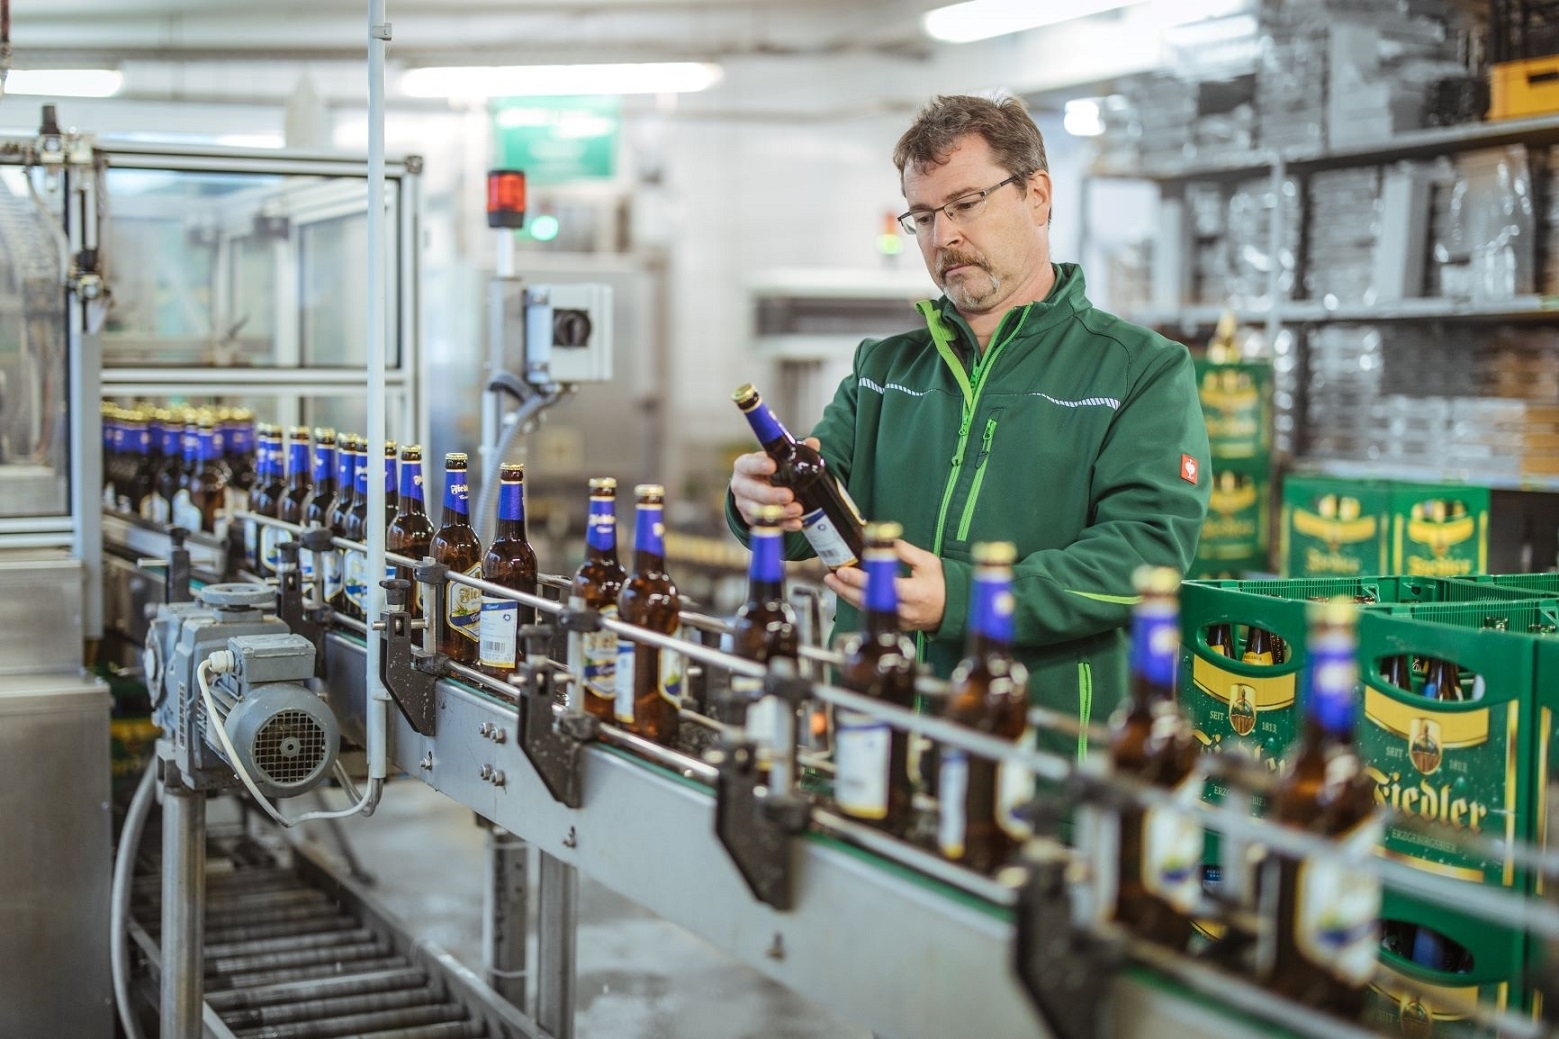  „Bier braucht Heimat“: Das Familienunternehmen Fiedler kann auf eine lange und mit dem Erzgebirge tief verwurzelte Tradition zurückschauen.  Heute beschäftigt die Brauerei 18 Angestellte und produziert 18.000 hl Bier.